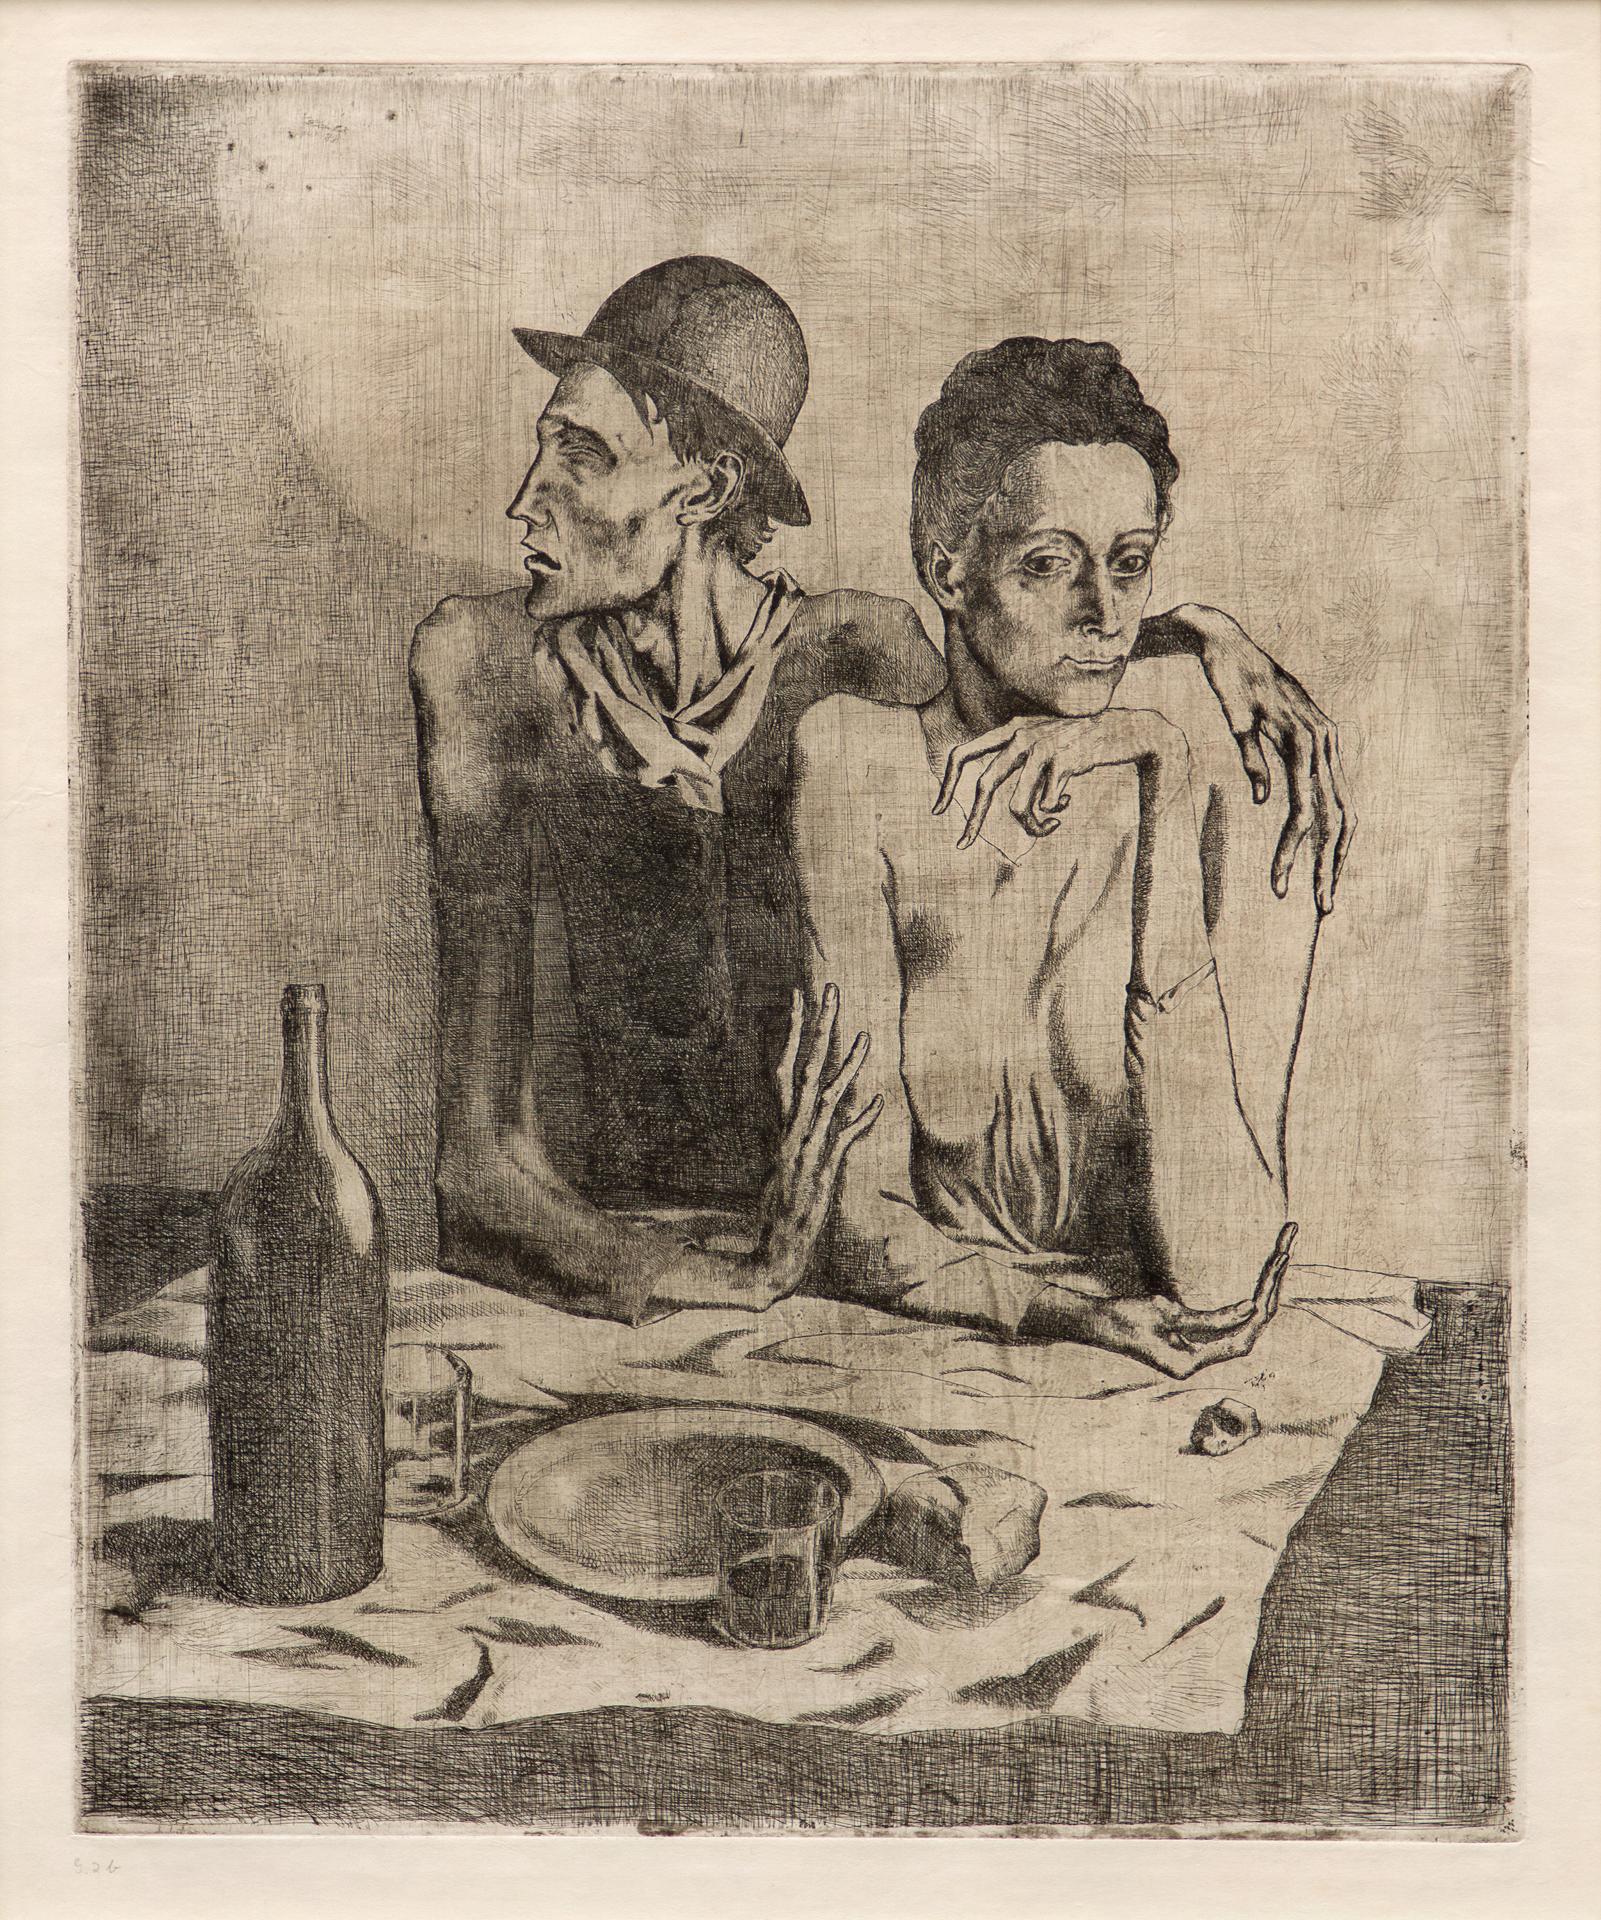 Pablo Ruiz Picasso (1881-1973) - Le repas frugal, 1904